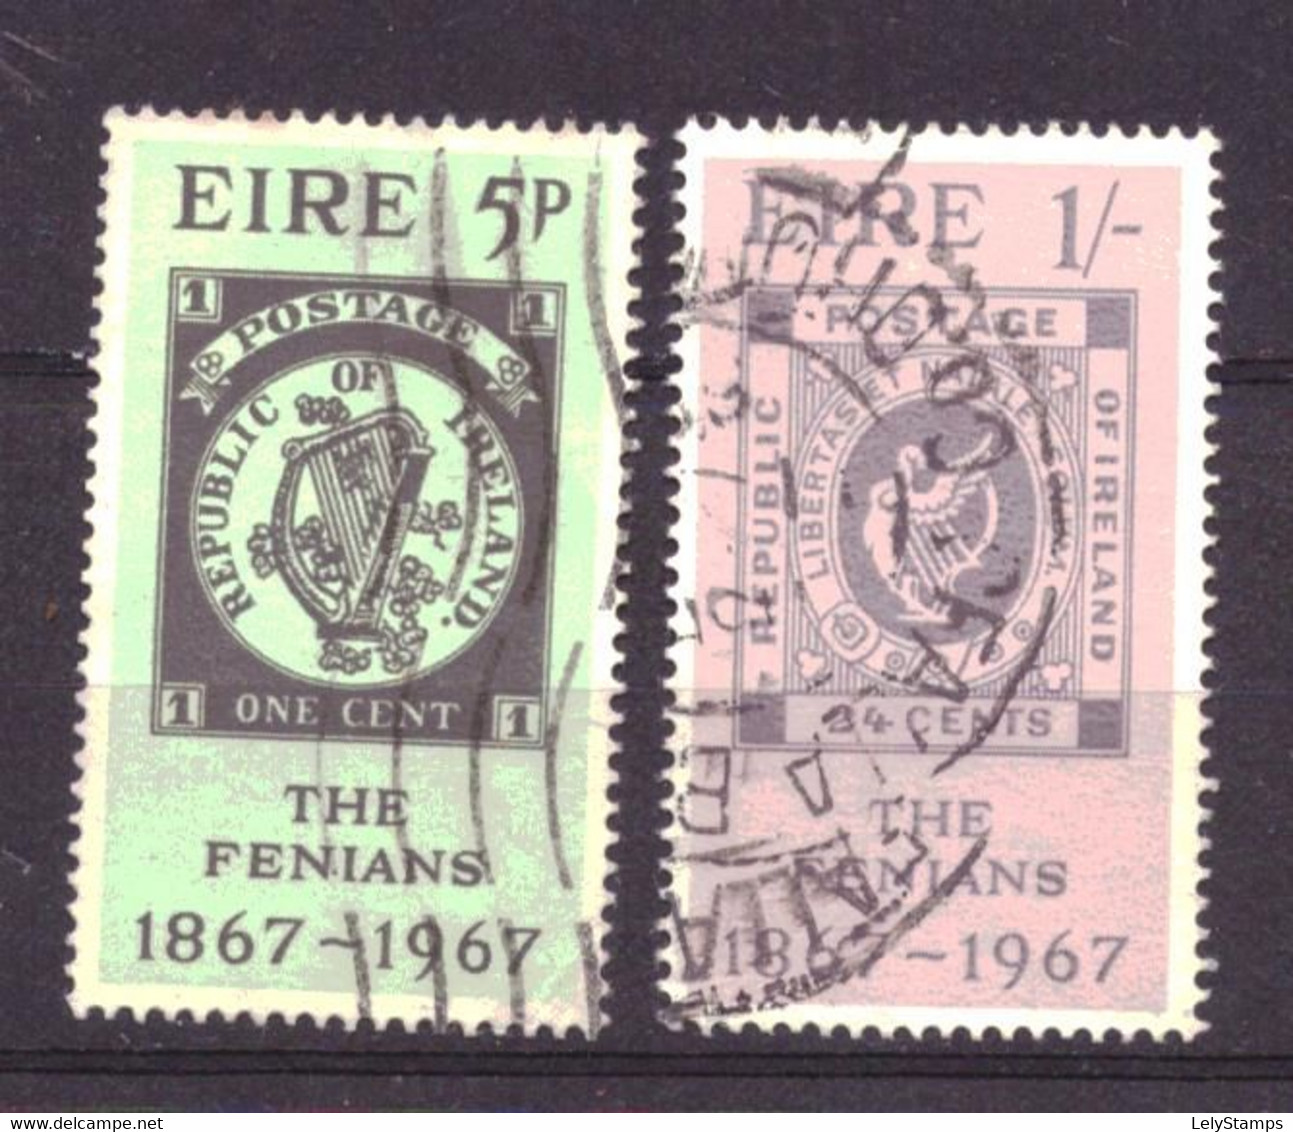 Ierland / Ireland / Eire 198 & 199 Used (1967) - Usati